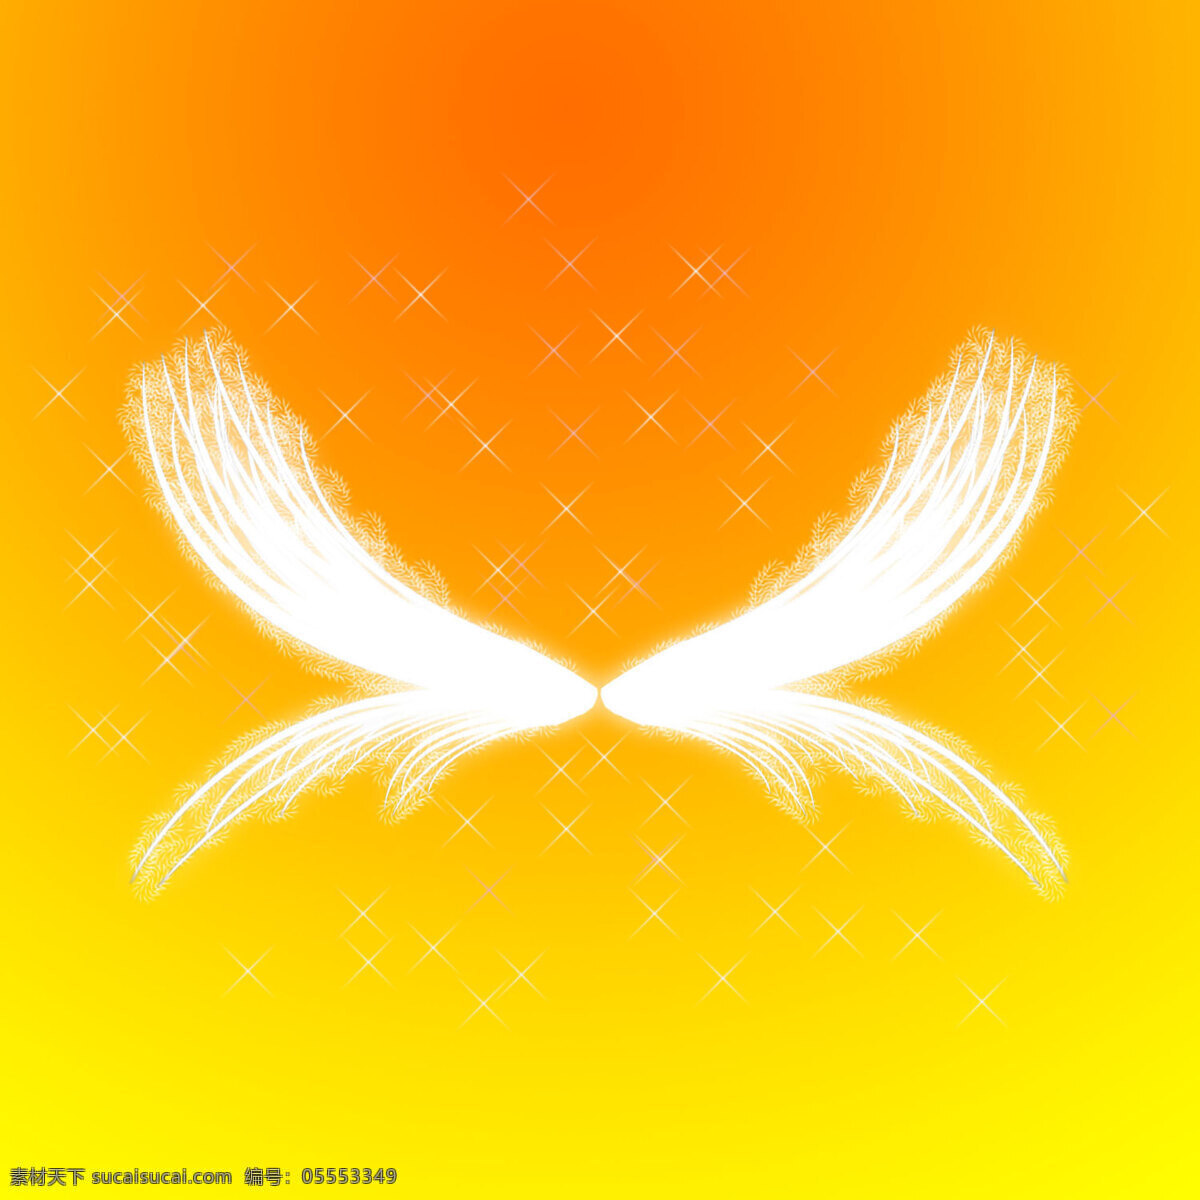 乳白色翅膀 乳白色 翅膀 设计素材 模板下载 天使翅膀 翅膀背景 天使 动漫动画